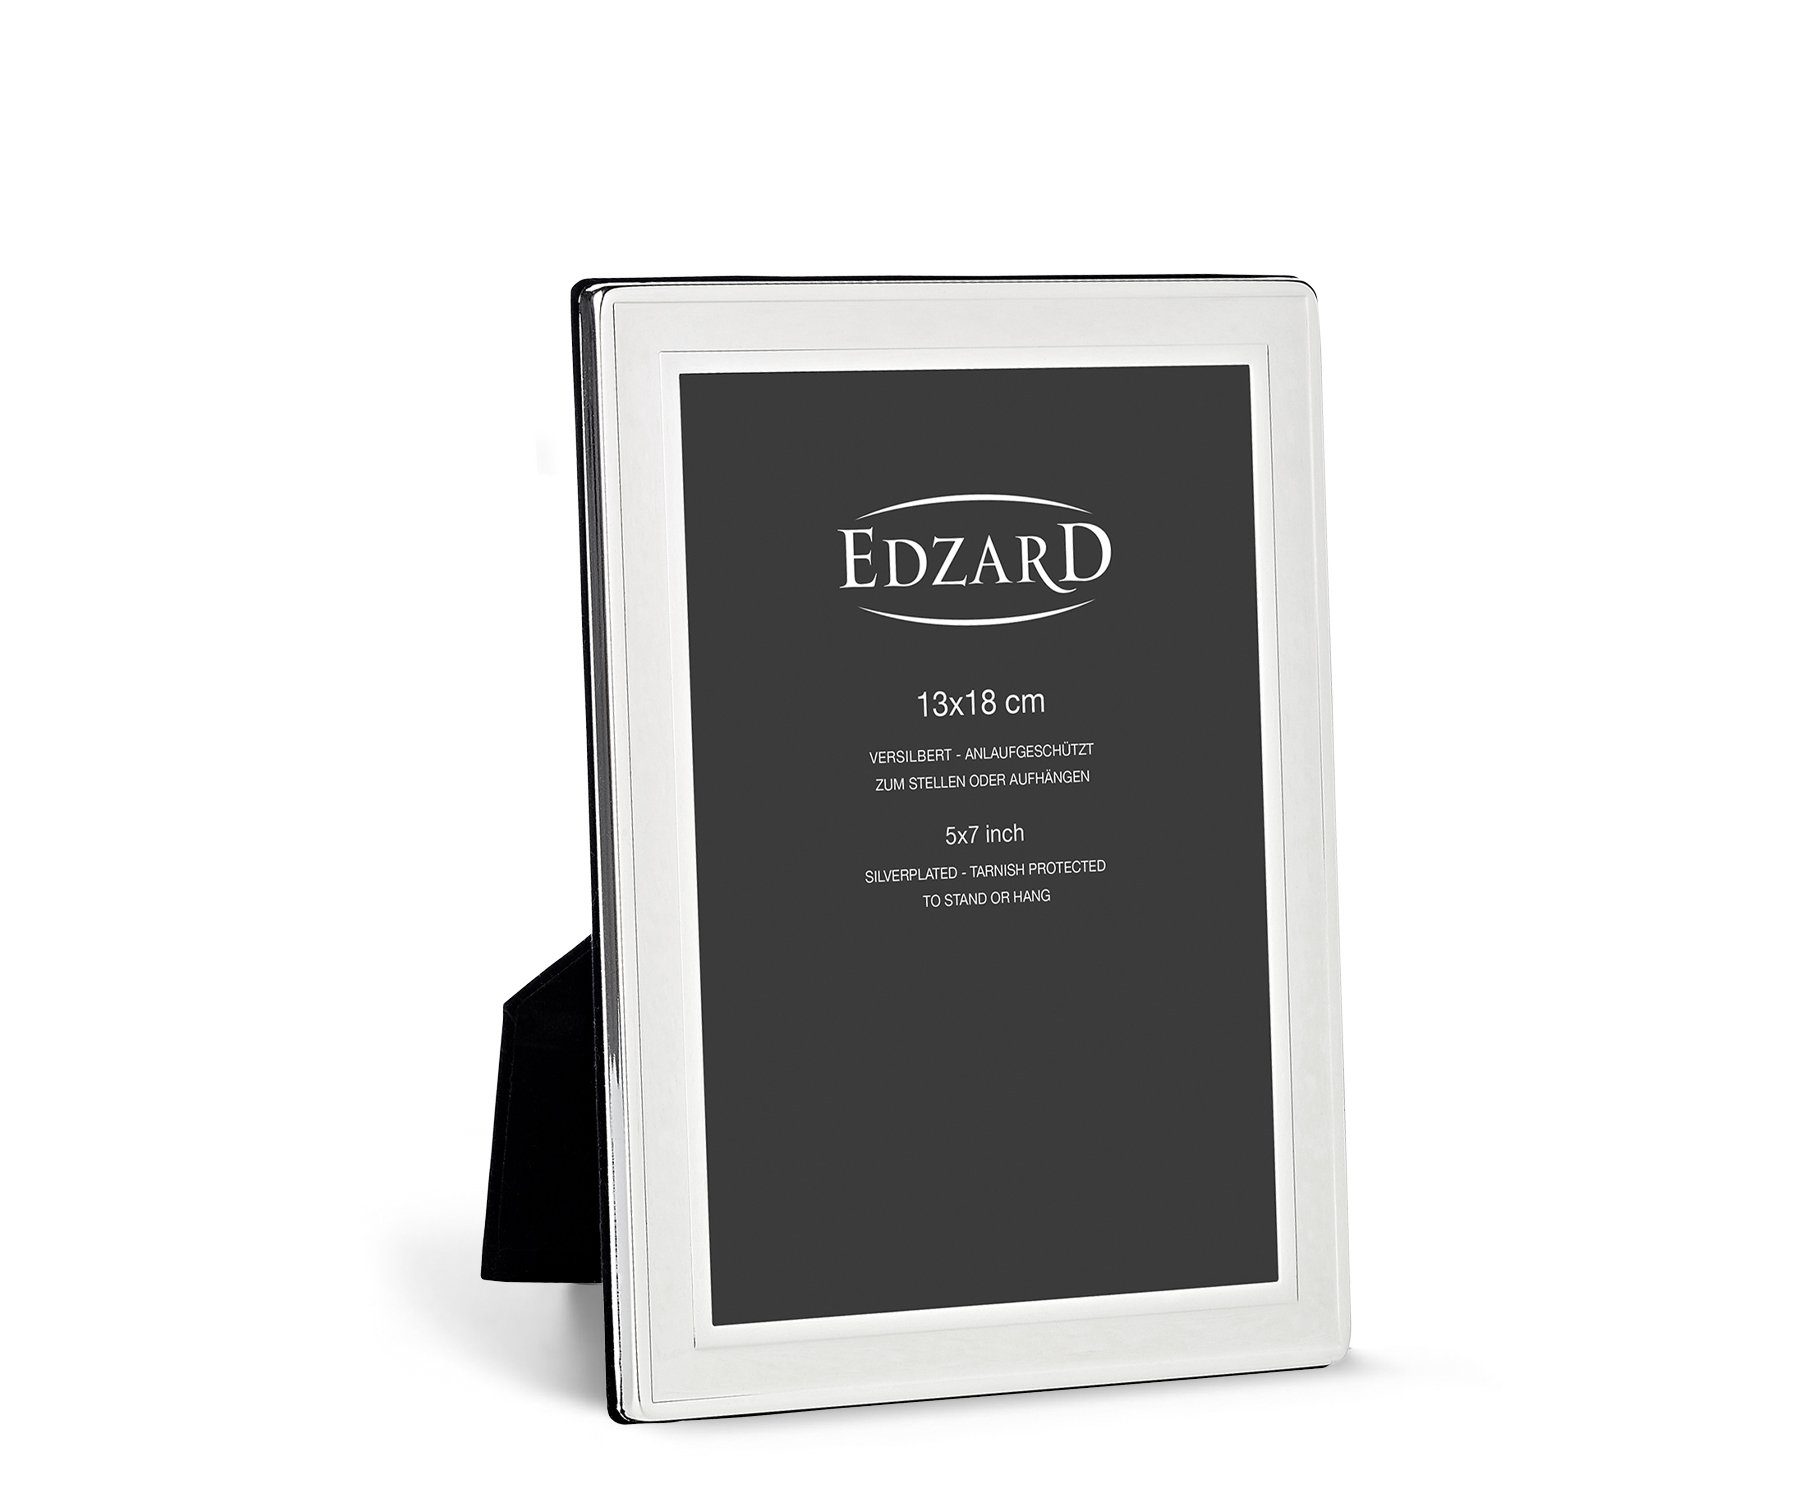 Beliebte Schnäppchen EDZARD Bilderrahmen Nardo, edel und anlaufgeschützt, cm für 13x18 Foto versilbert